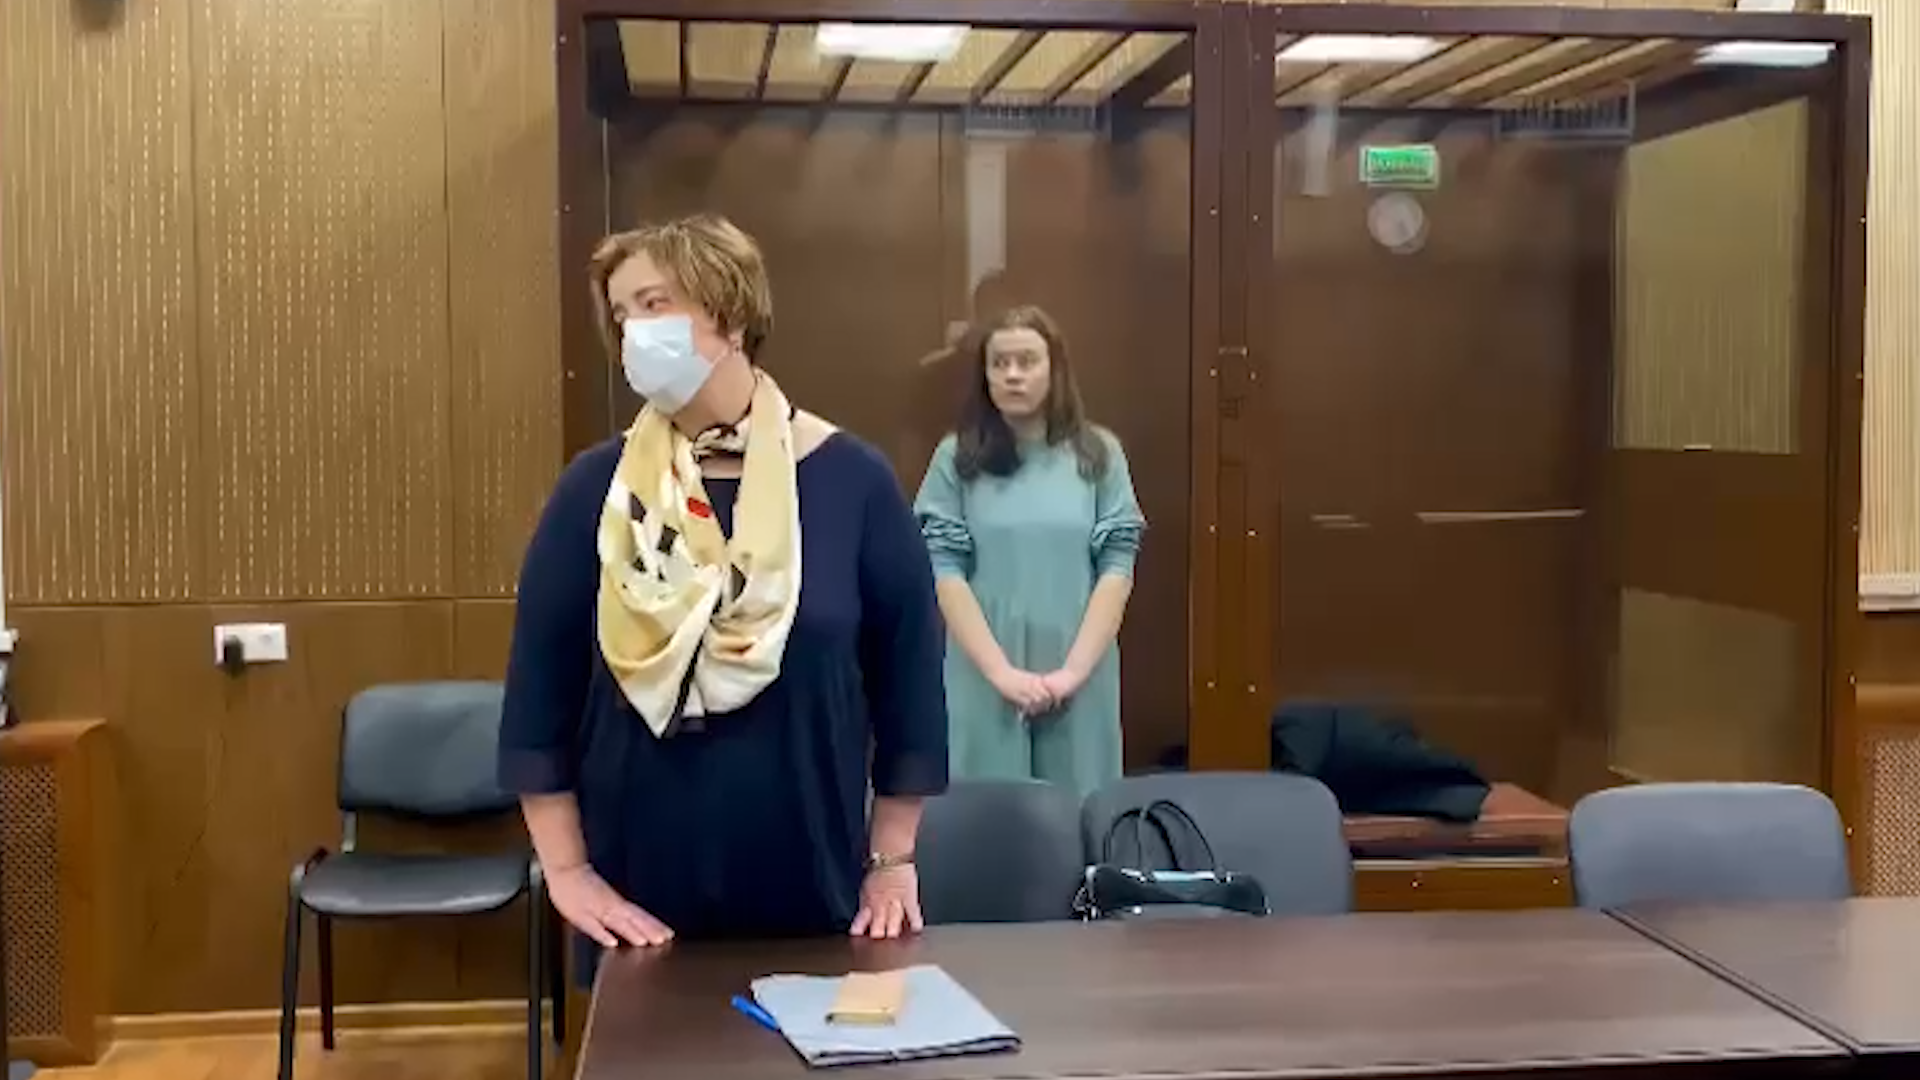 Девушка молотова. Девушка бросившая коктейль Молотова в полицейских. Арест девушек в суде. Девушка арестована в суде.